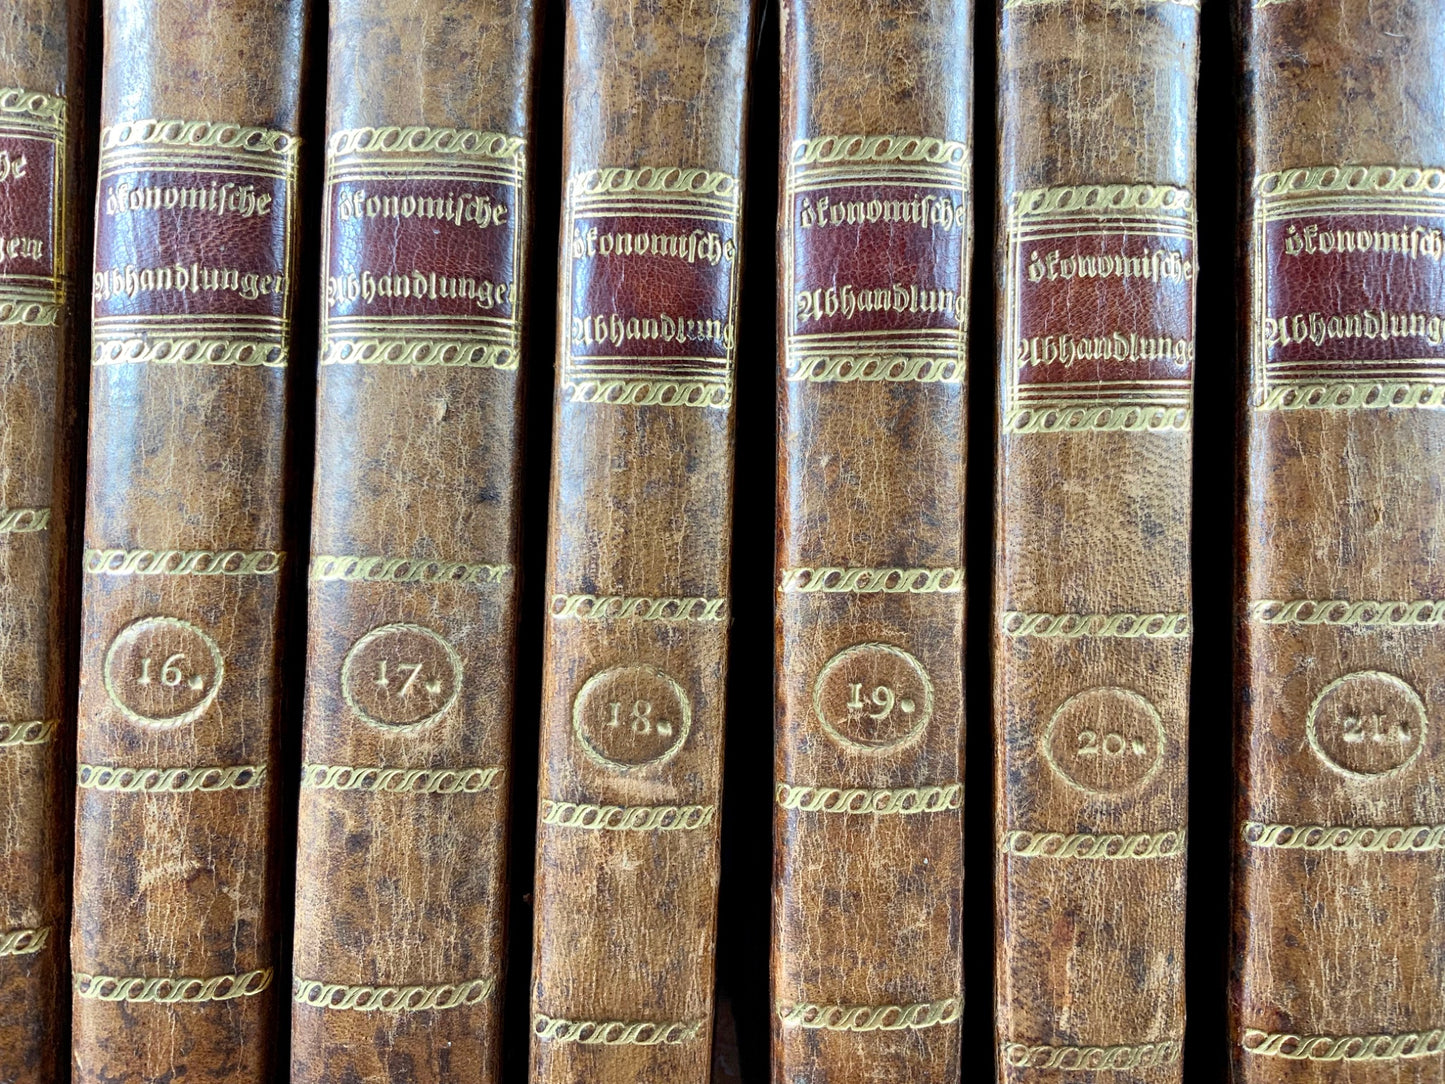 1760-73 Serie completa, Società economica di Berna, Svizzera, riccamente illustrata